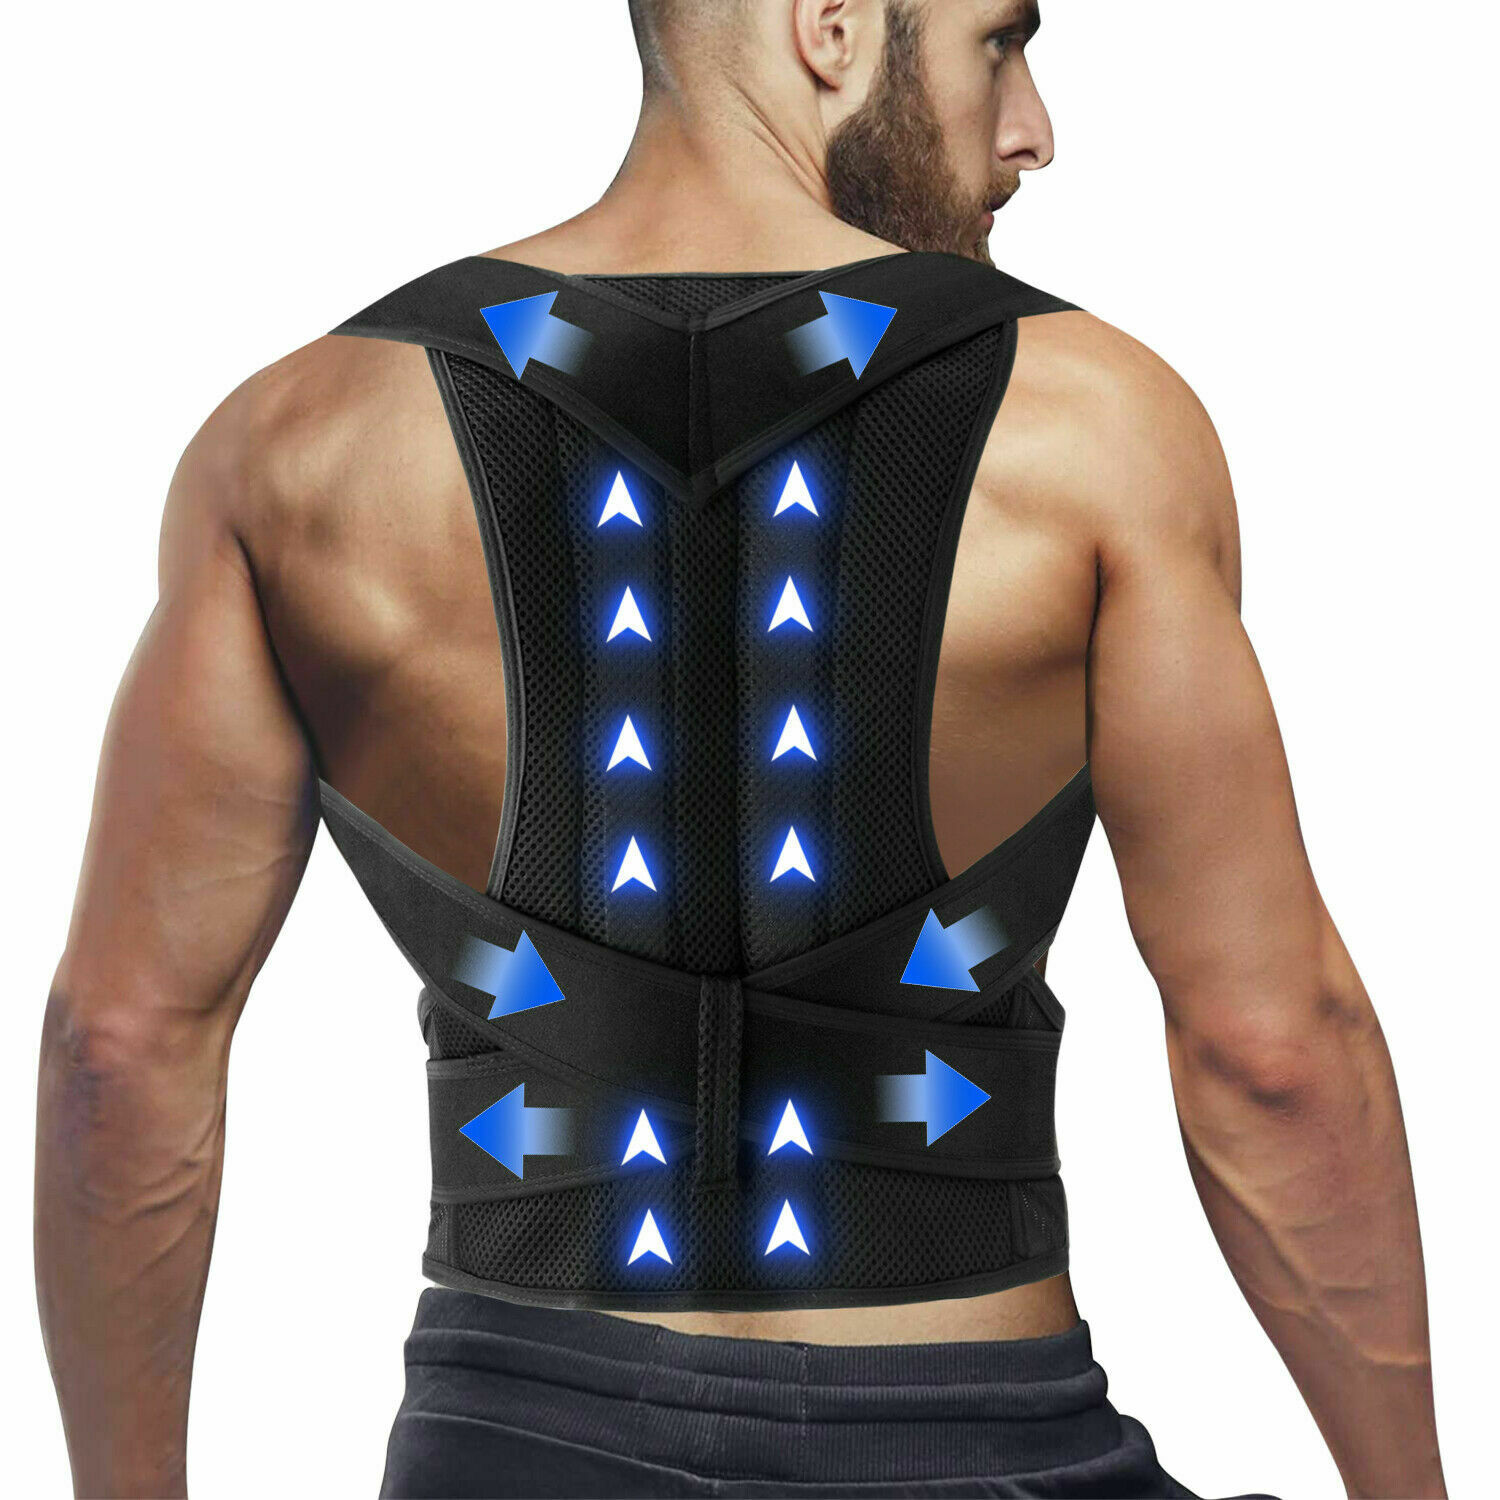 For Men Women Adjustable Posture Corrector Low Back Support Shoulder Brace Belt